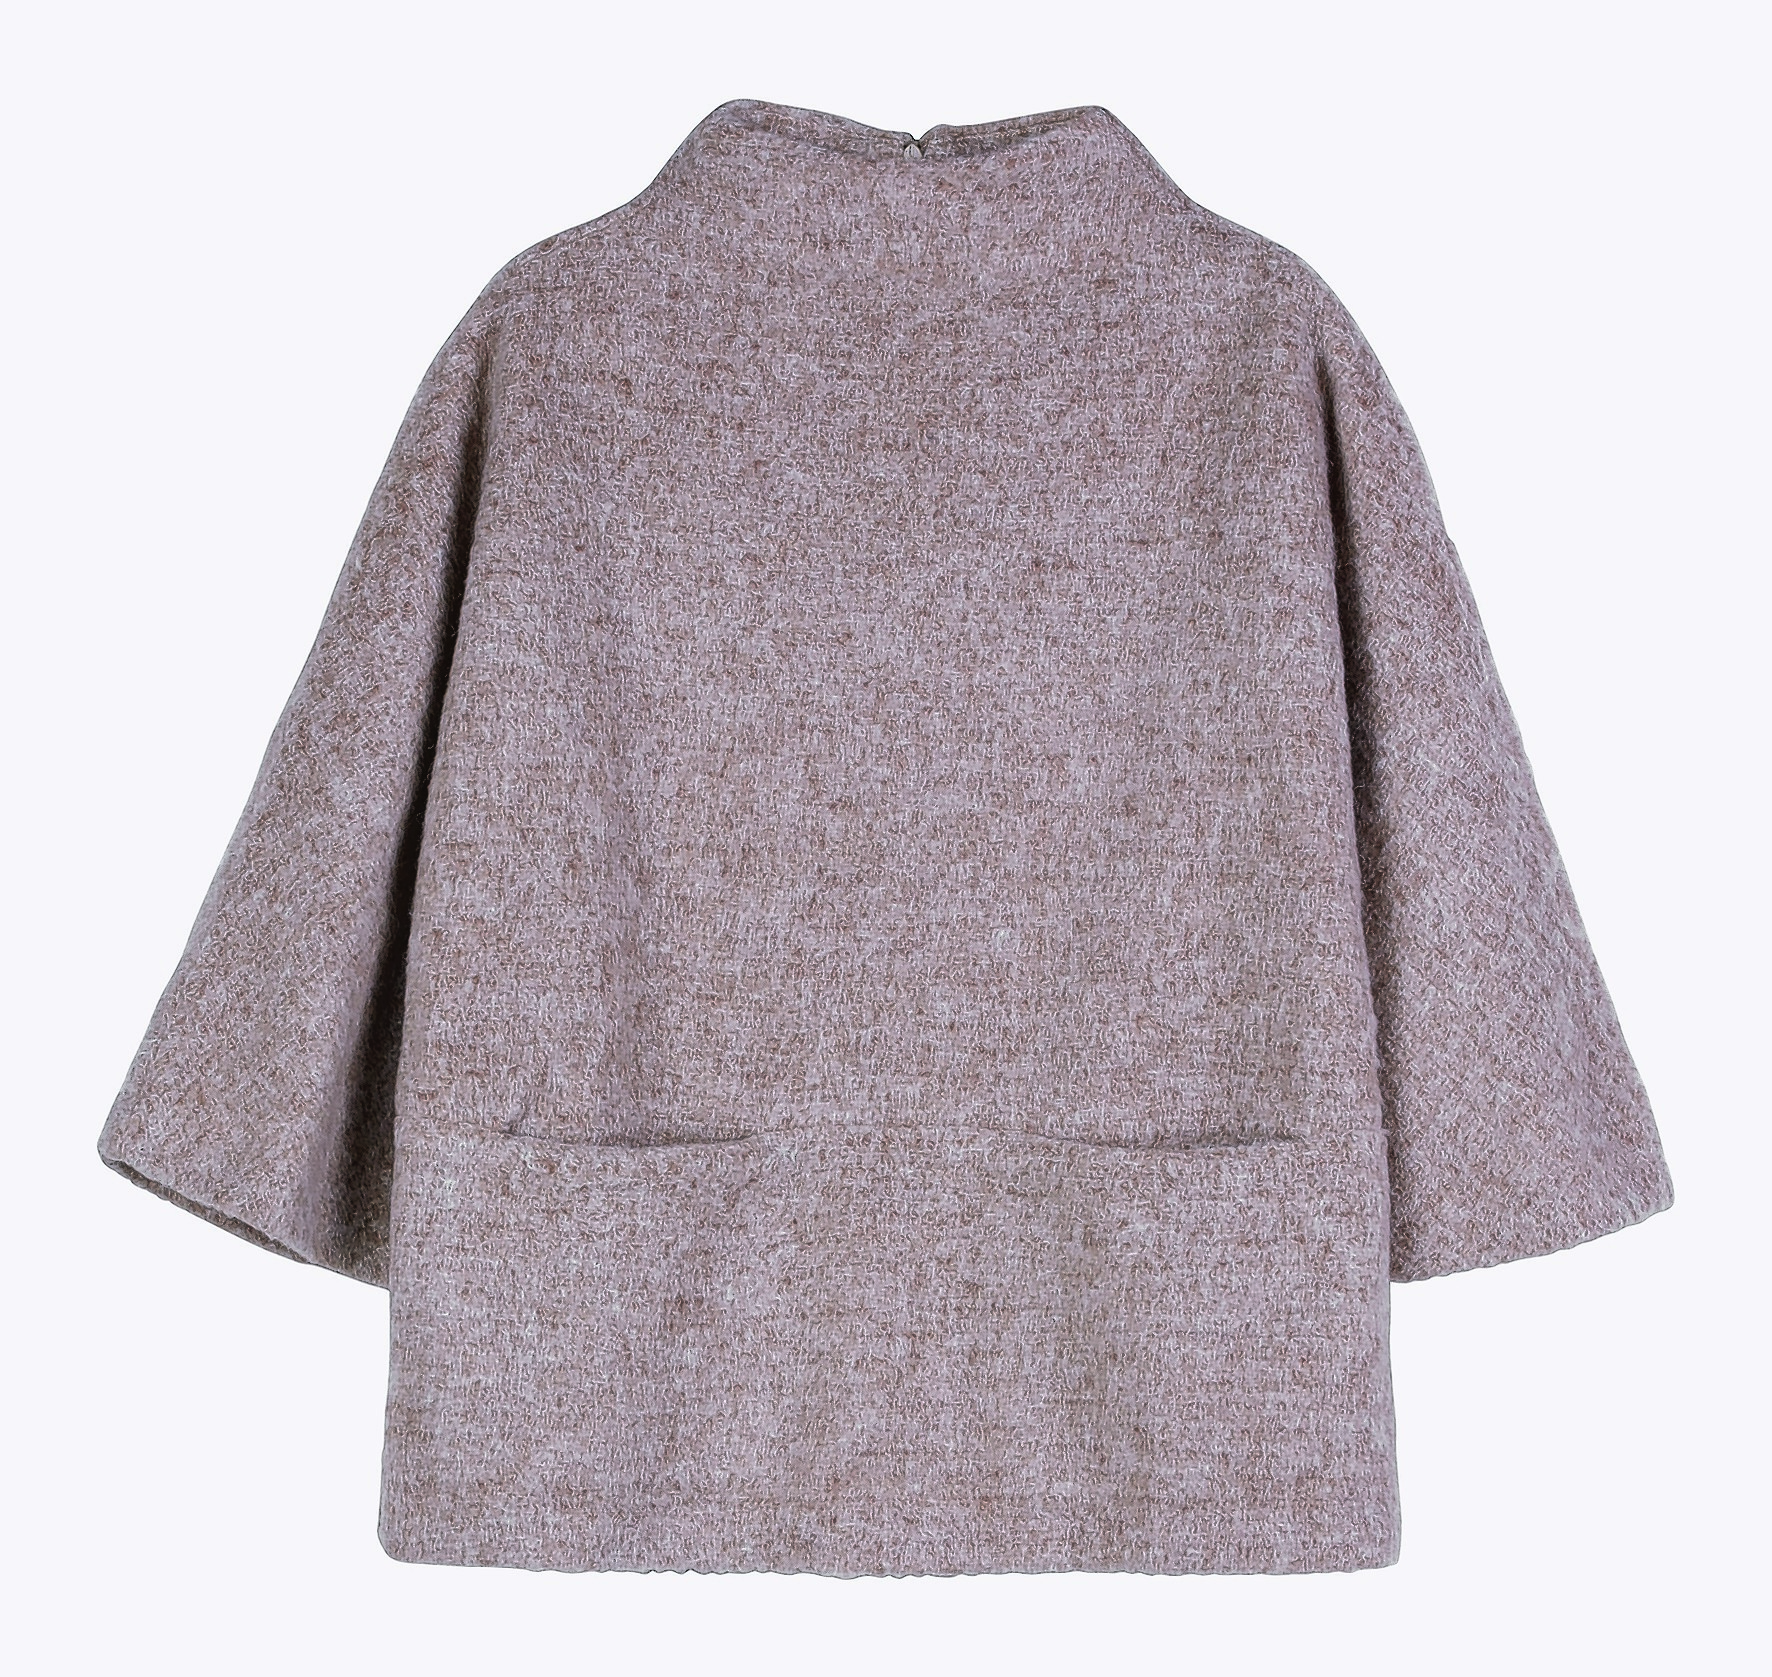 H&M Wool Top, £34.99, 